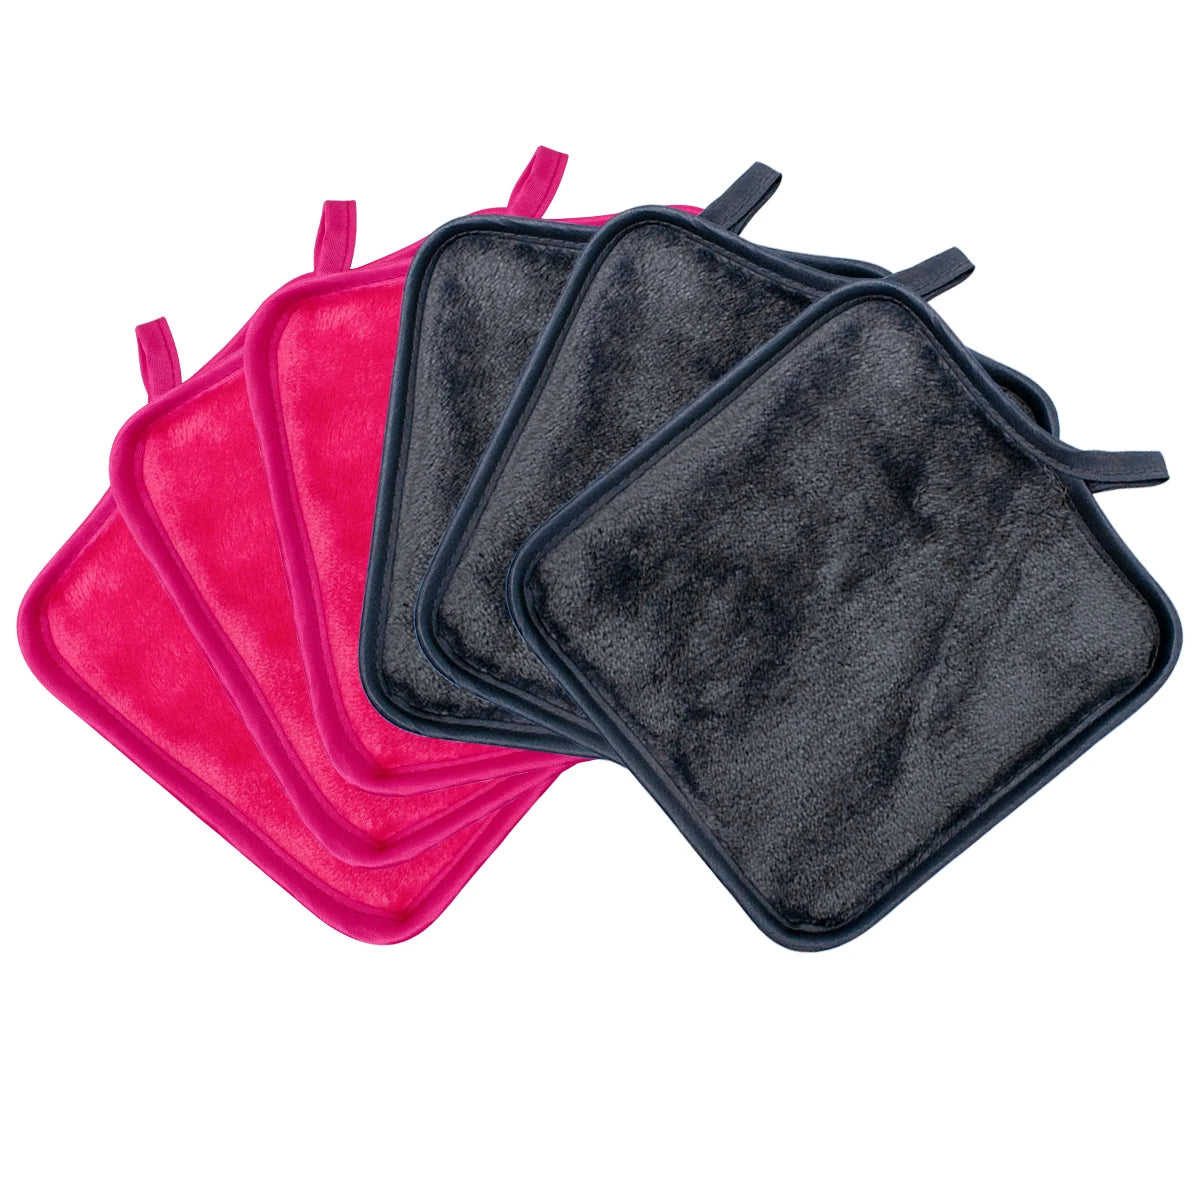 12-Pack Reusable Makeup Remover Pads - Microfiber Facial Towels